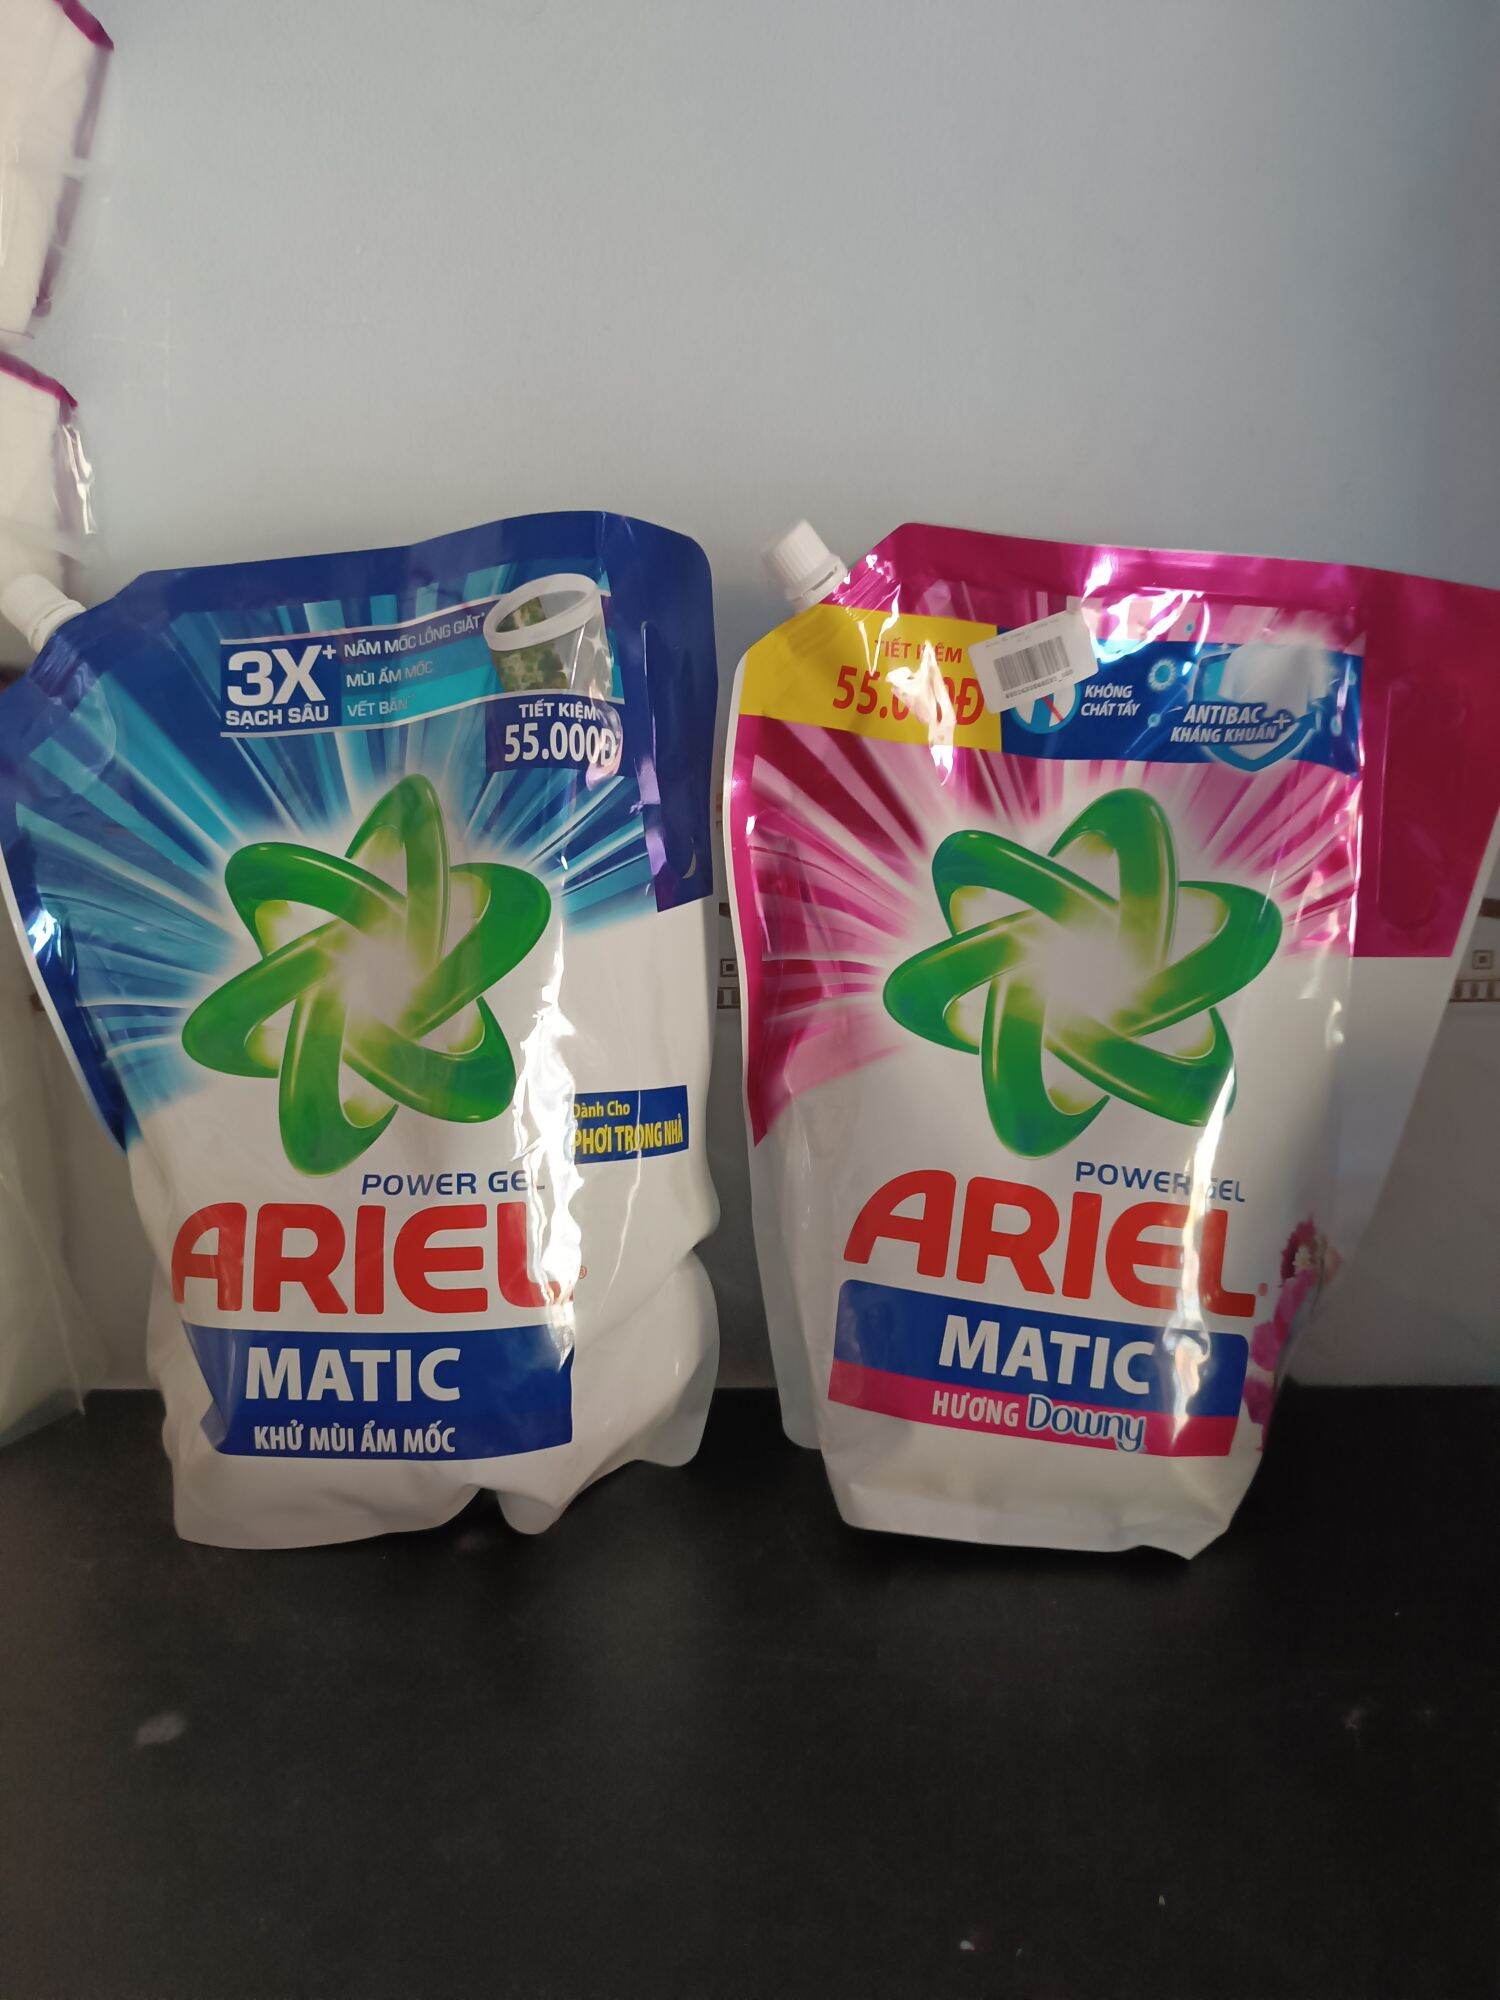 Nước giặt Ariel hương Dơwny (Hồng) và khử mùi ẩm mốc (xanh)2kg